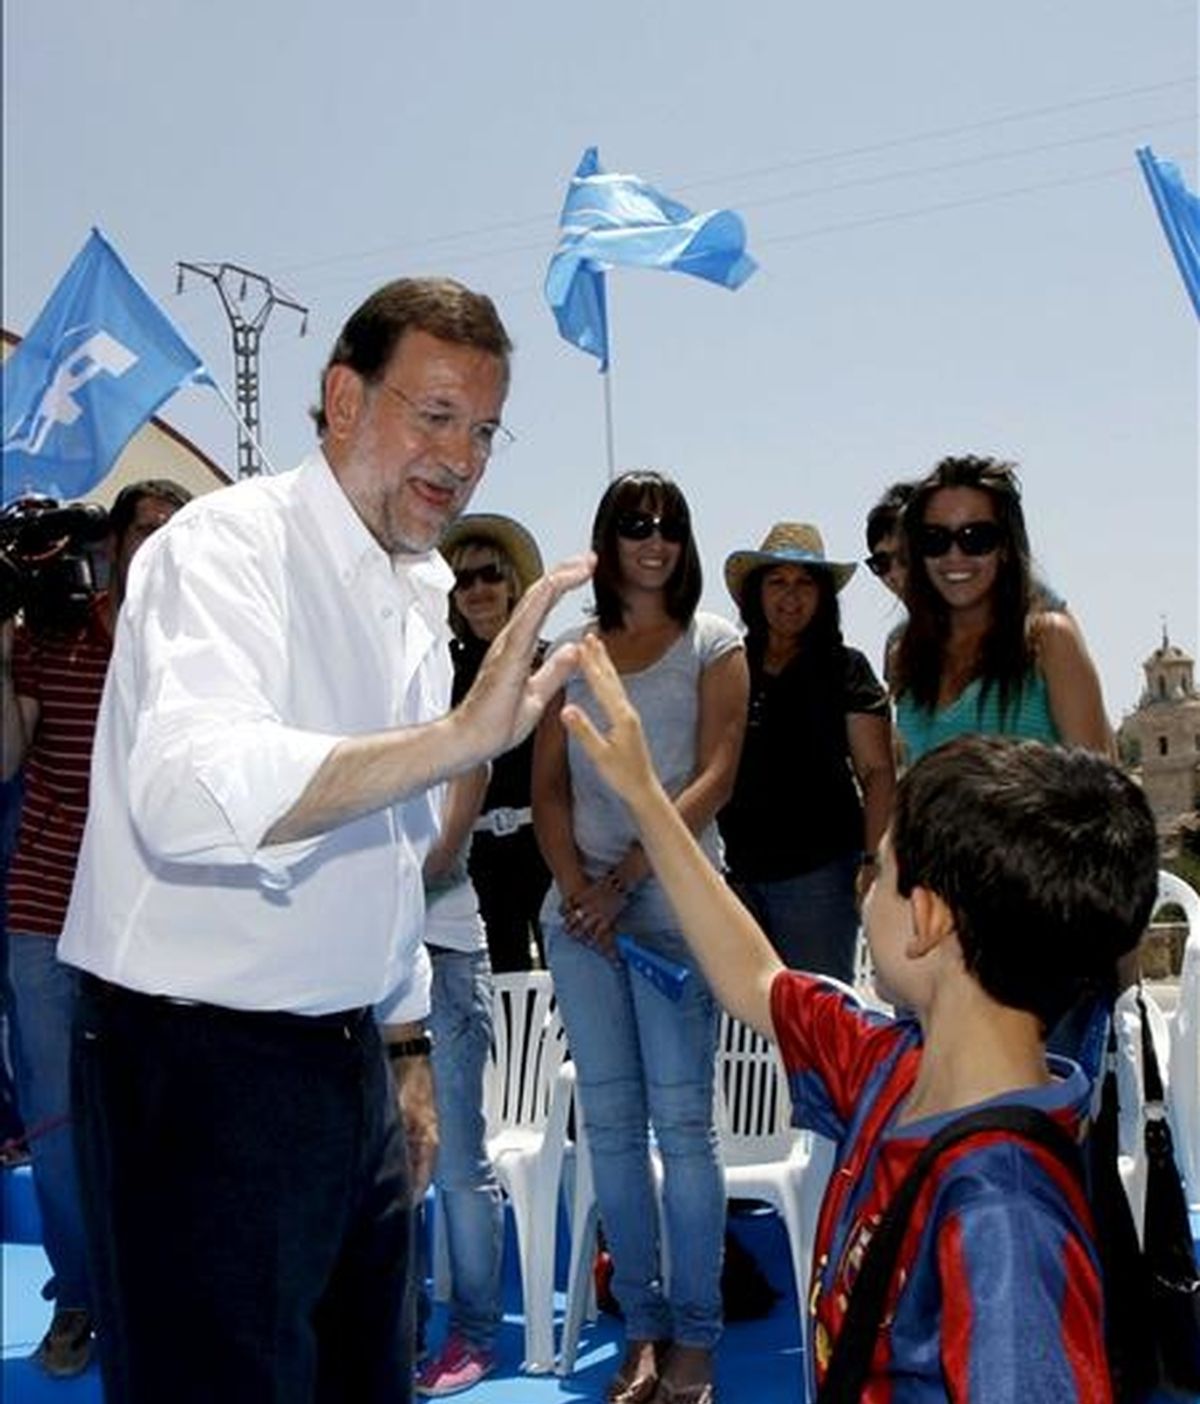 El presidente del Partido Popular, Mariano Rajoy, saluda a un niño durante un acto electoral celebrado hoy en la localidad murciana de Caravaca de la Cruz, de cara a las próximas elecciones europeas. EFE